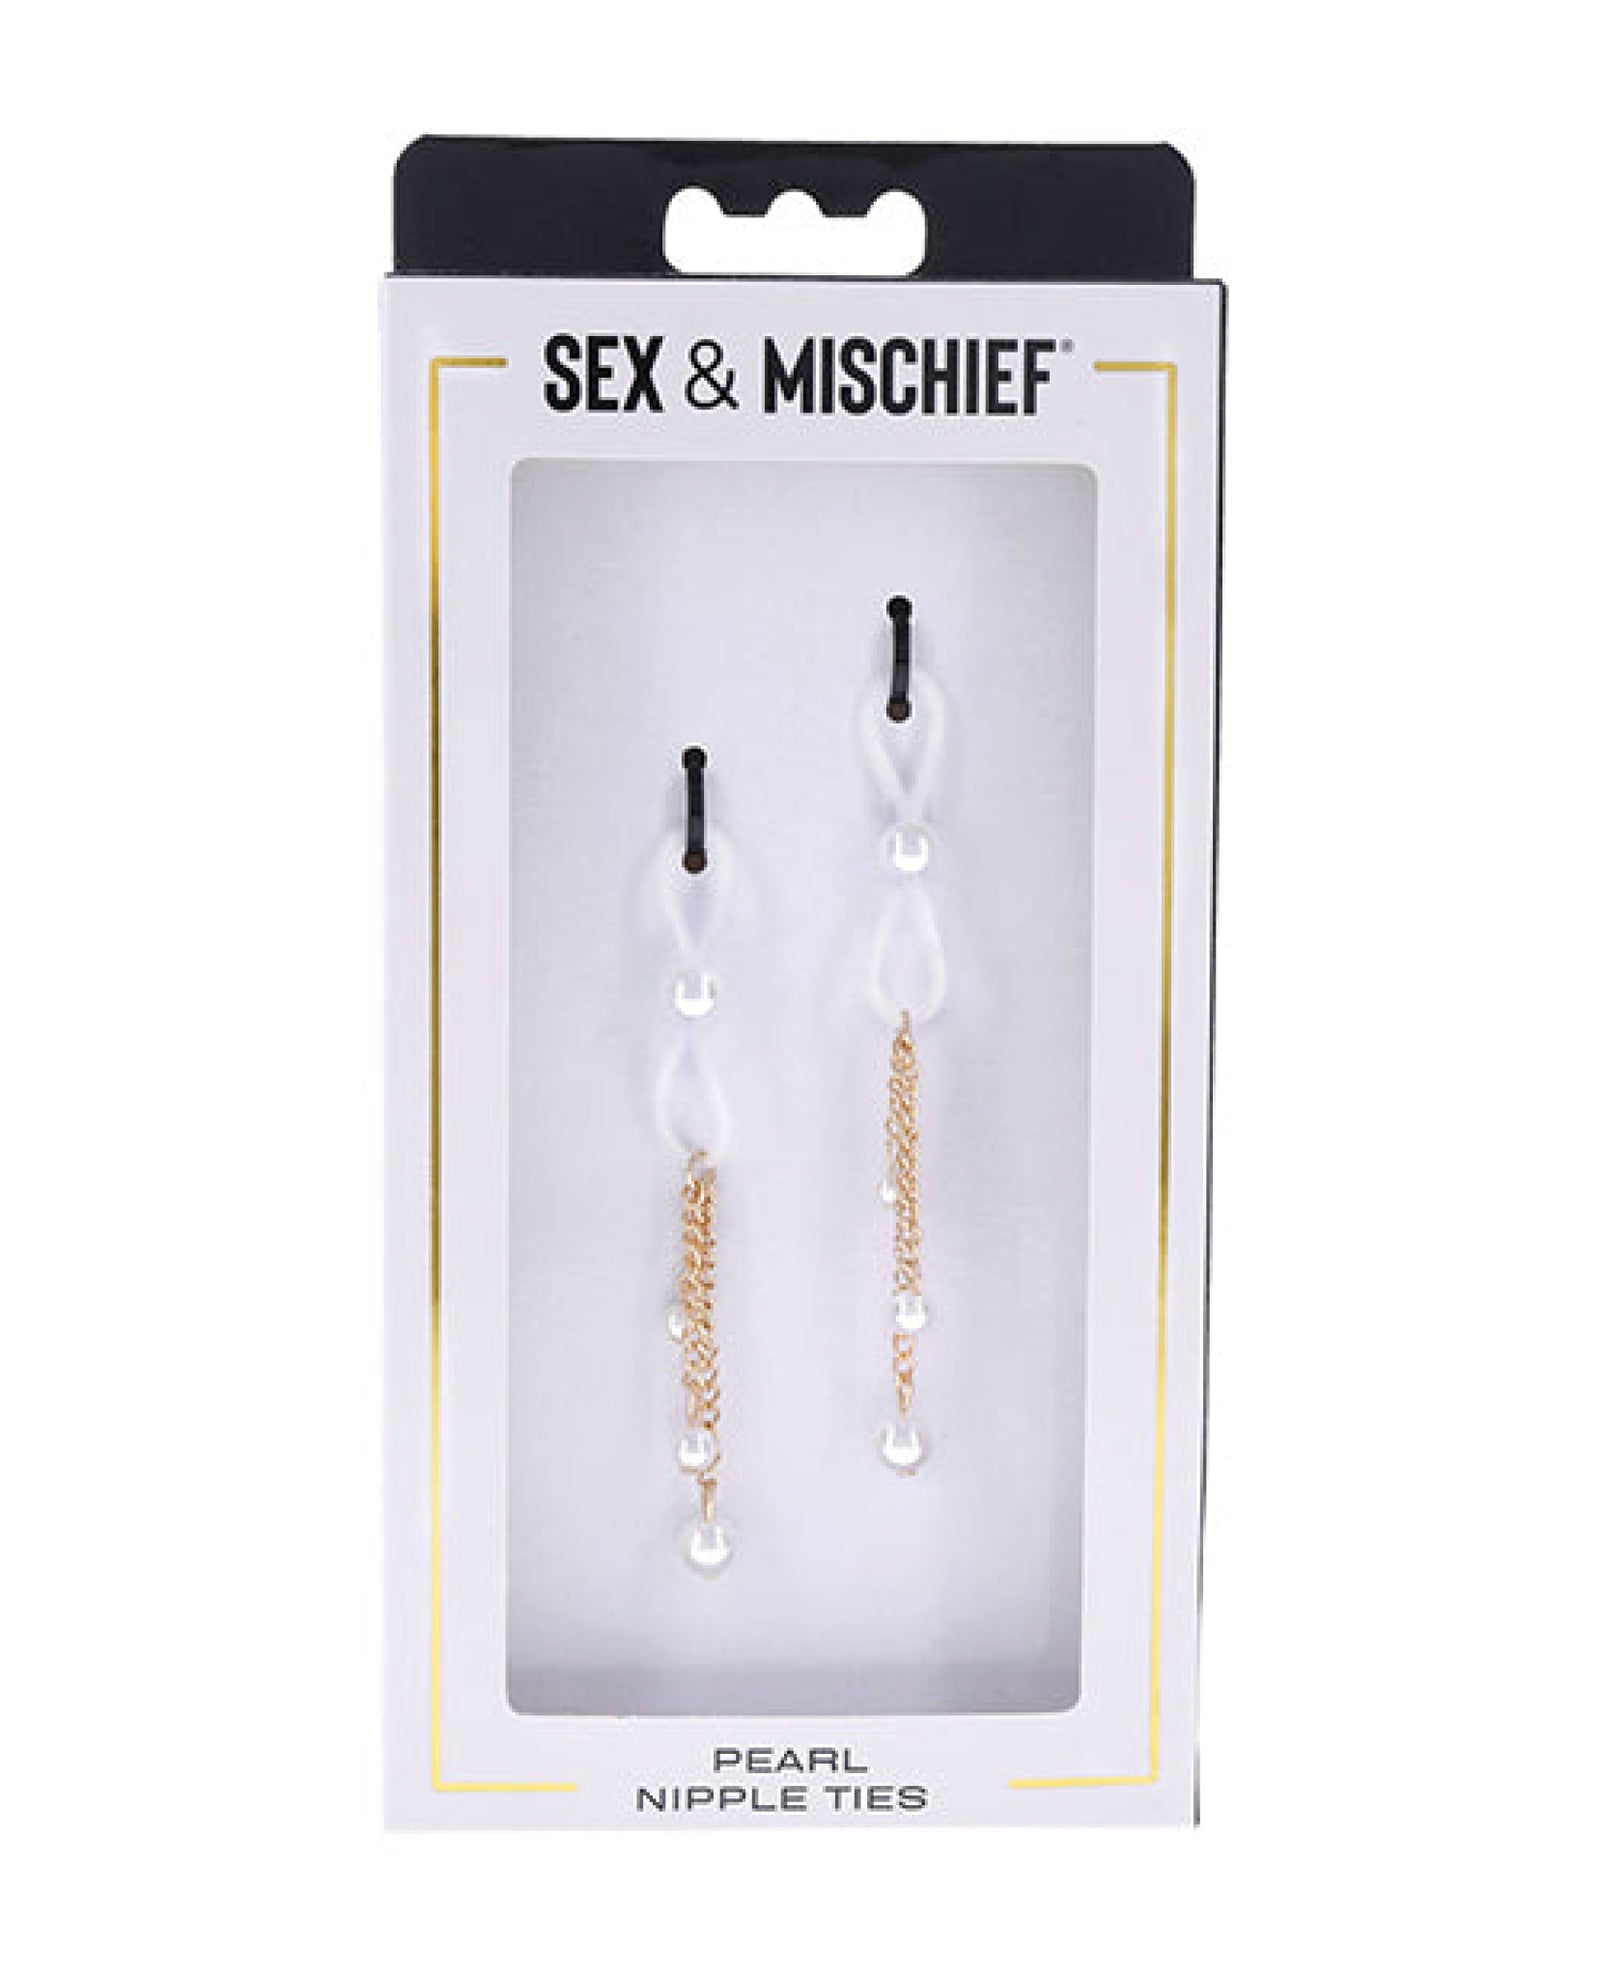 Sex & Mischief Pearl Nipple Ties Sex & Mischief